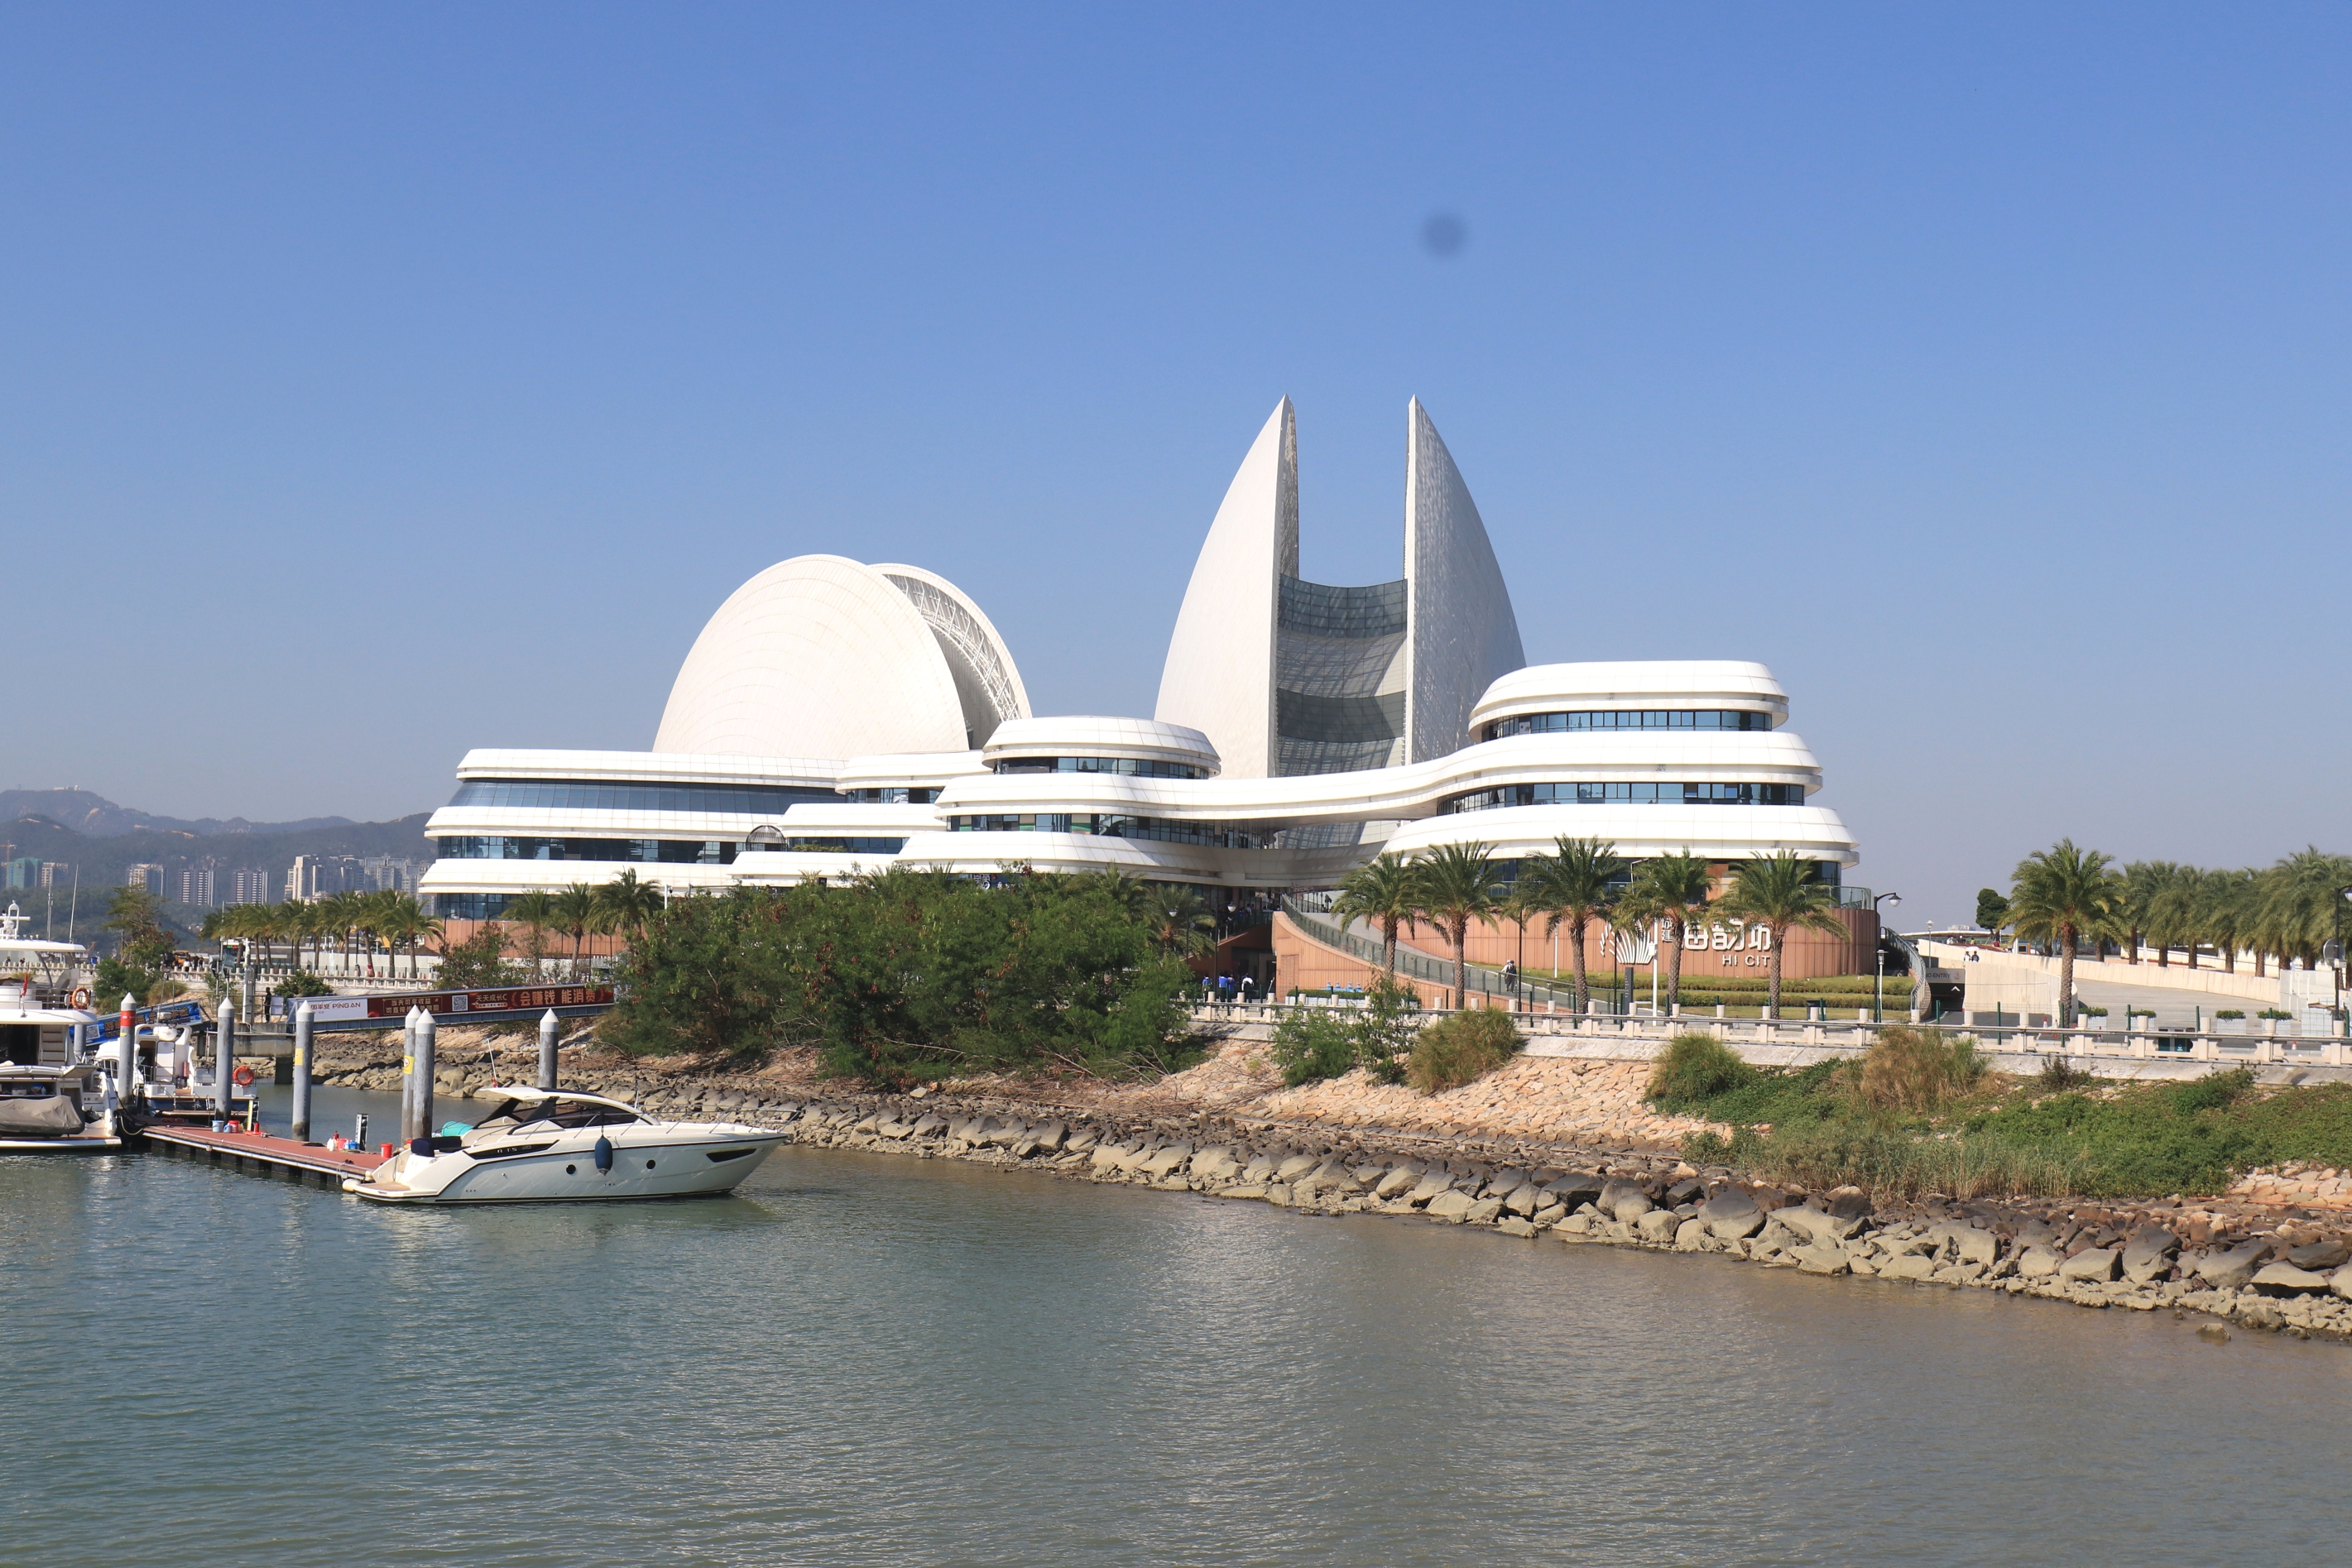 大剧院位于珠海情侣路野狸岛海滨,是中国唯一建设在海岛上的歌剧院,总